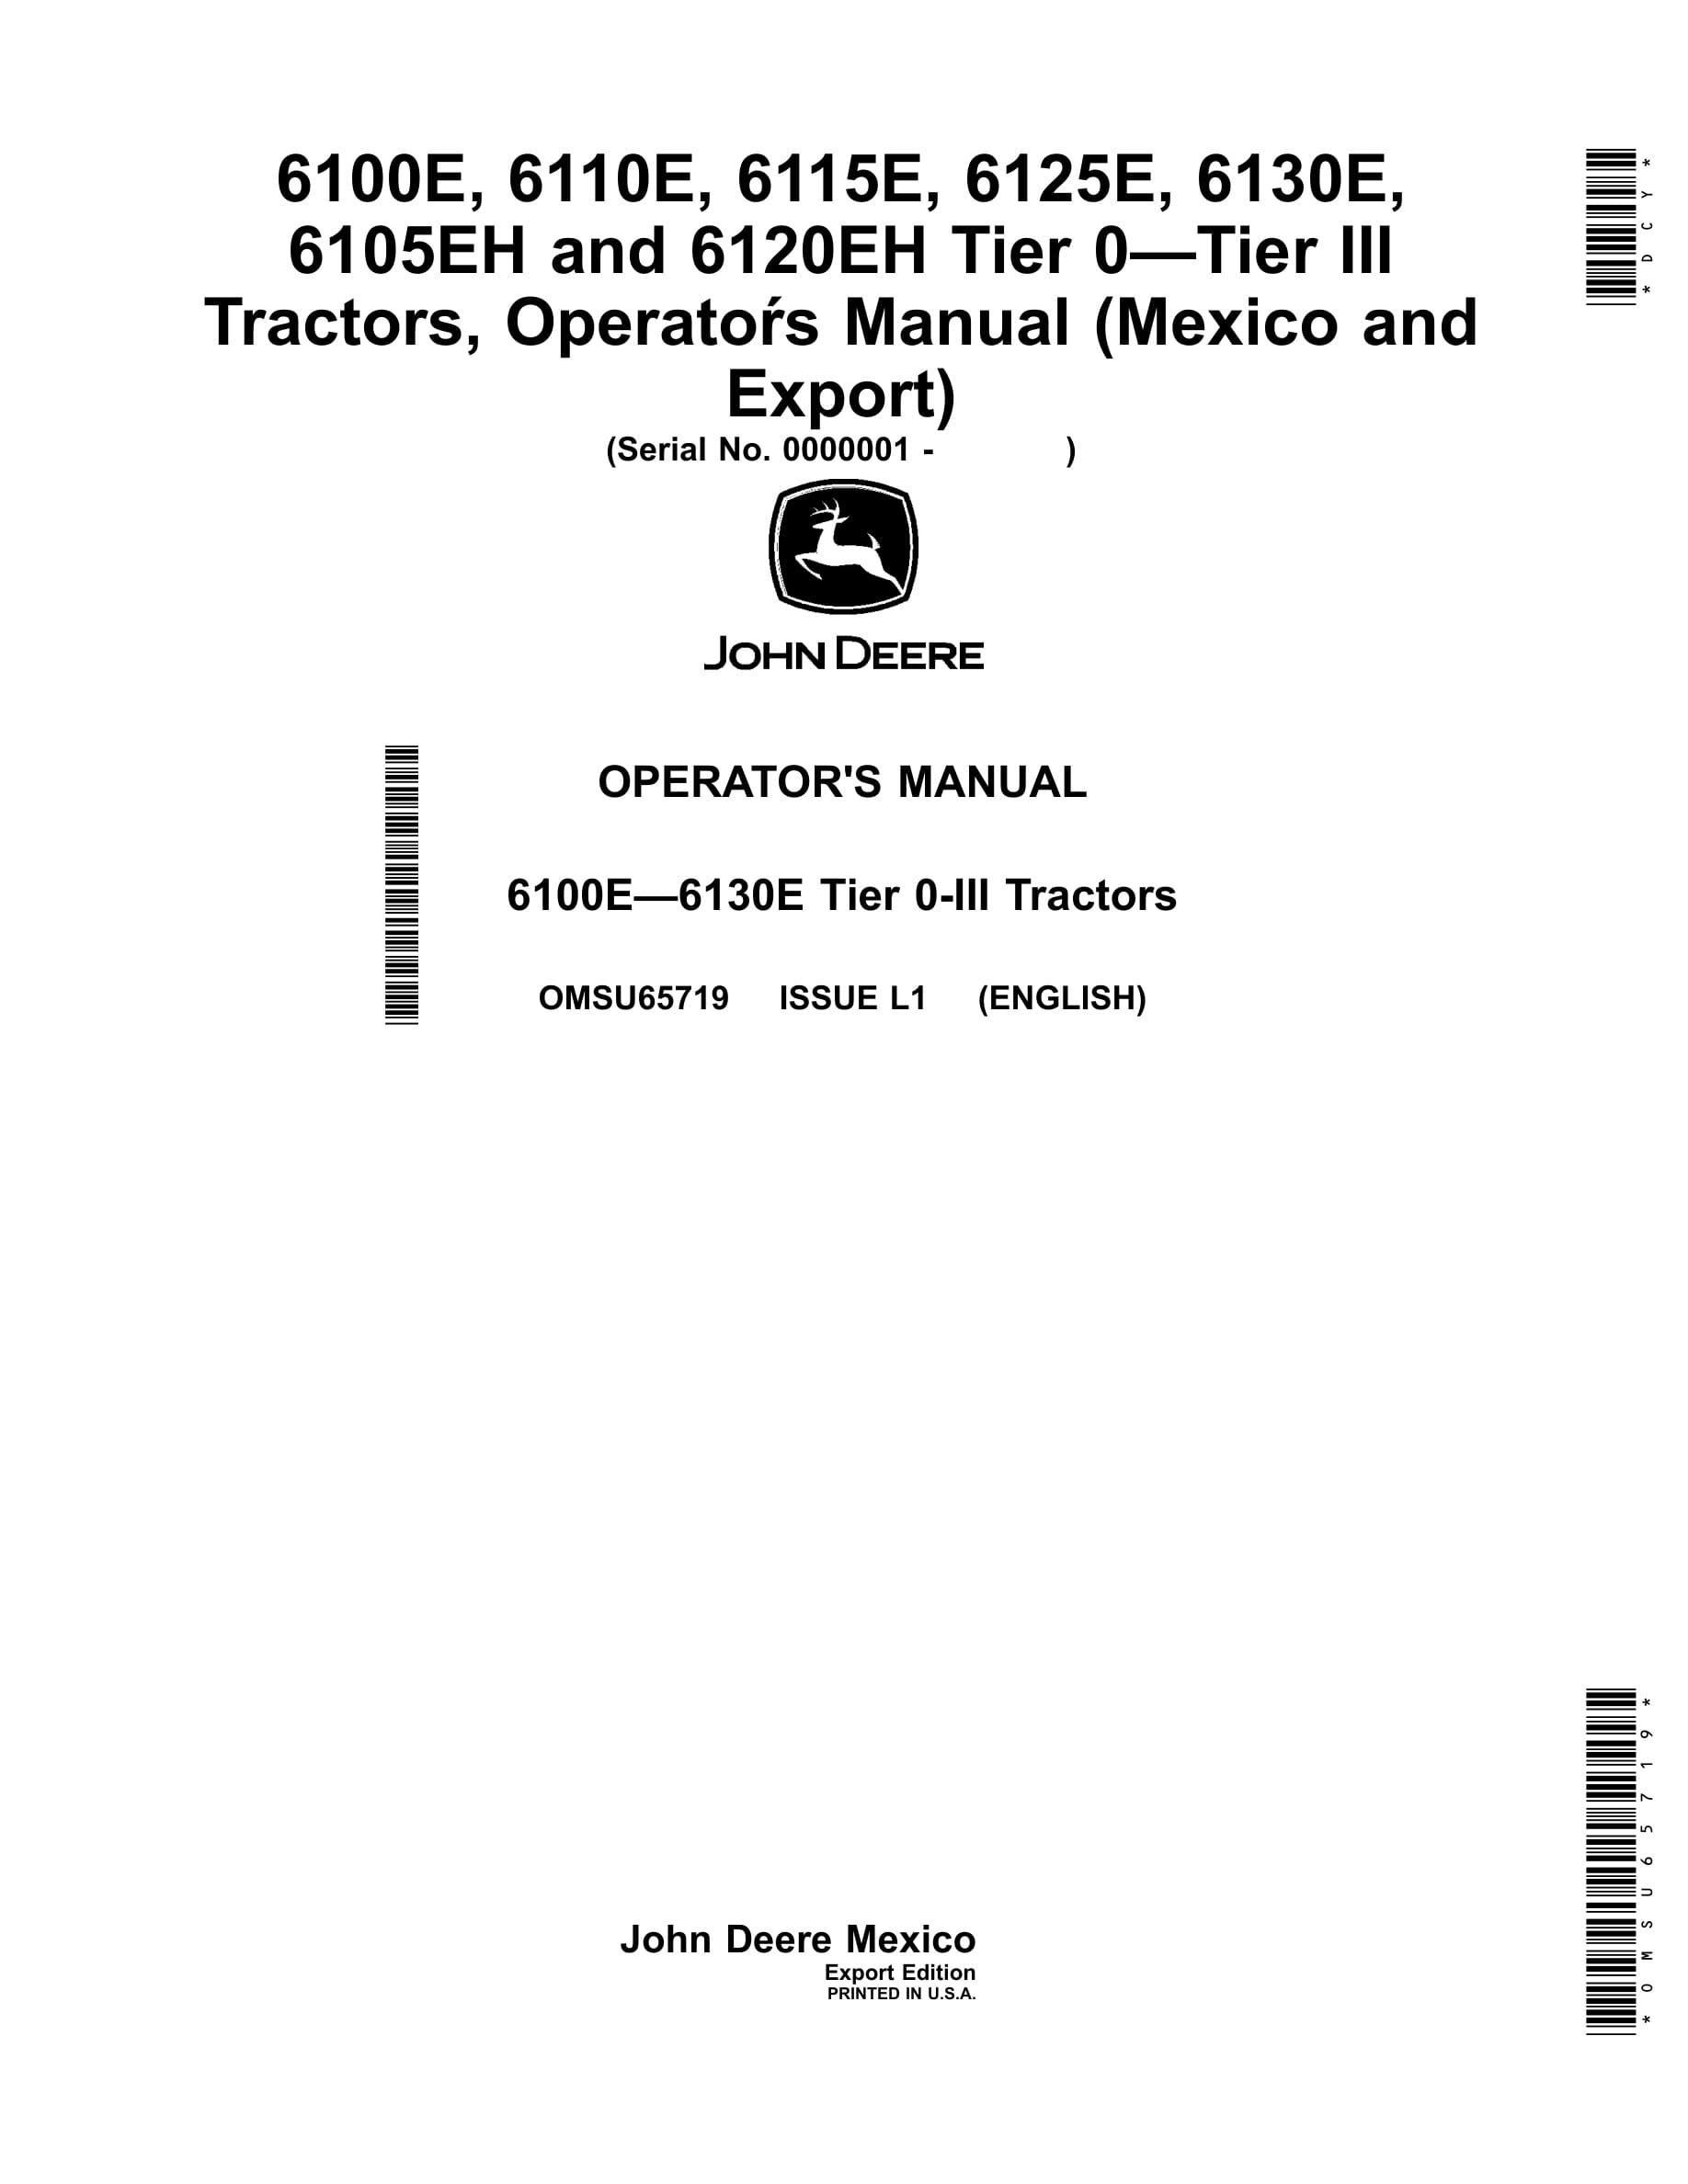 John Deere 6100e, 6110e, 6115e, 6125e, 6130e, 6105eh And 6120eh Tier 0-tier Iii Tractors Operator Manual OMSU65719-1